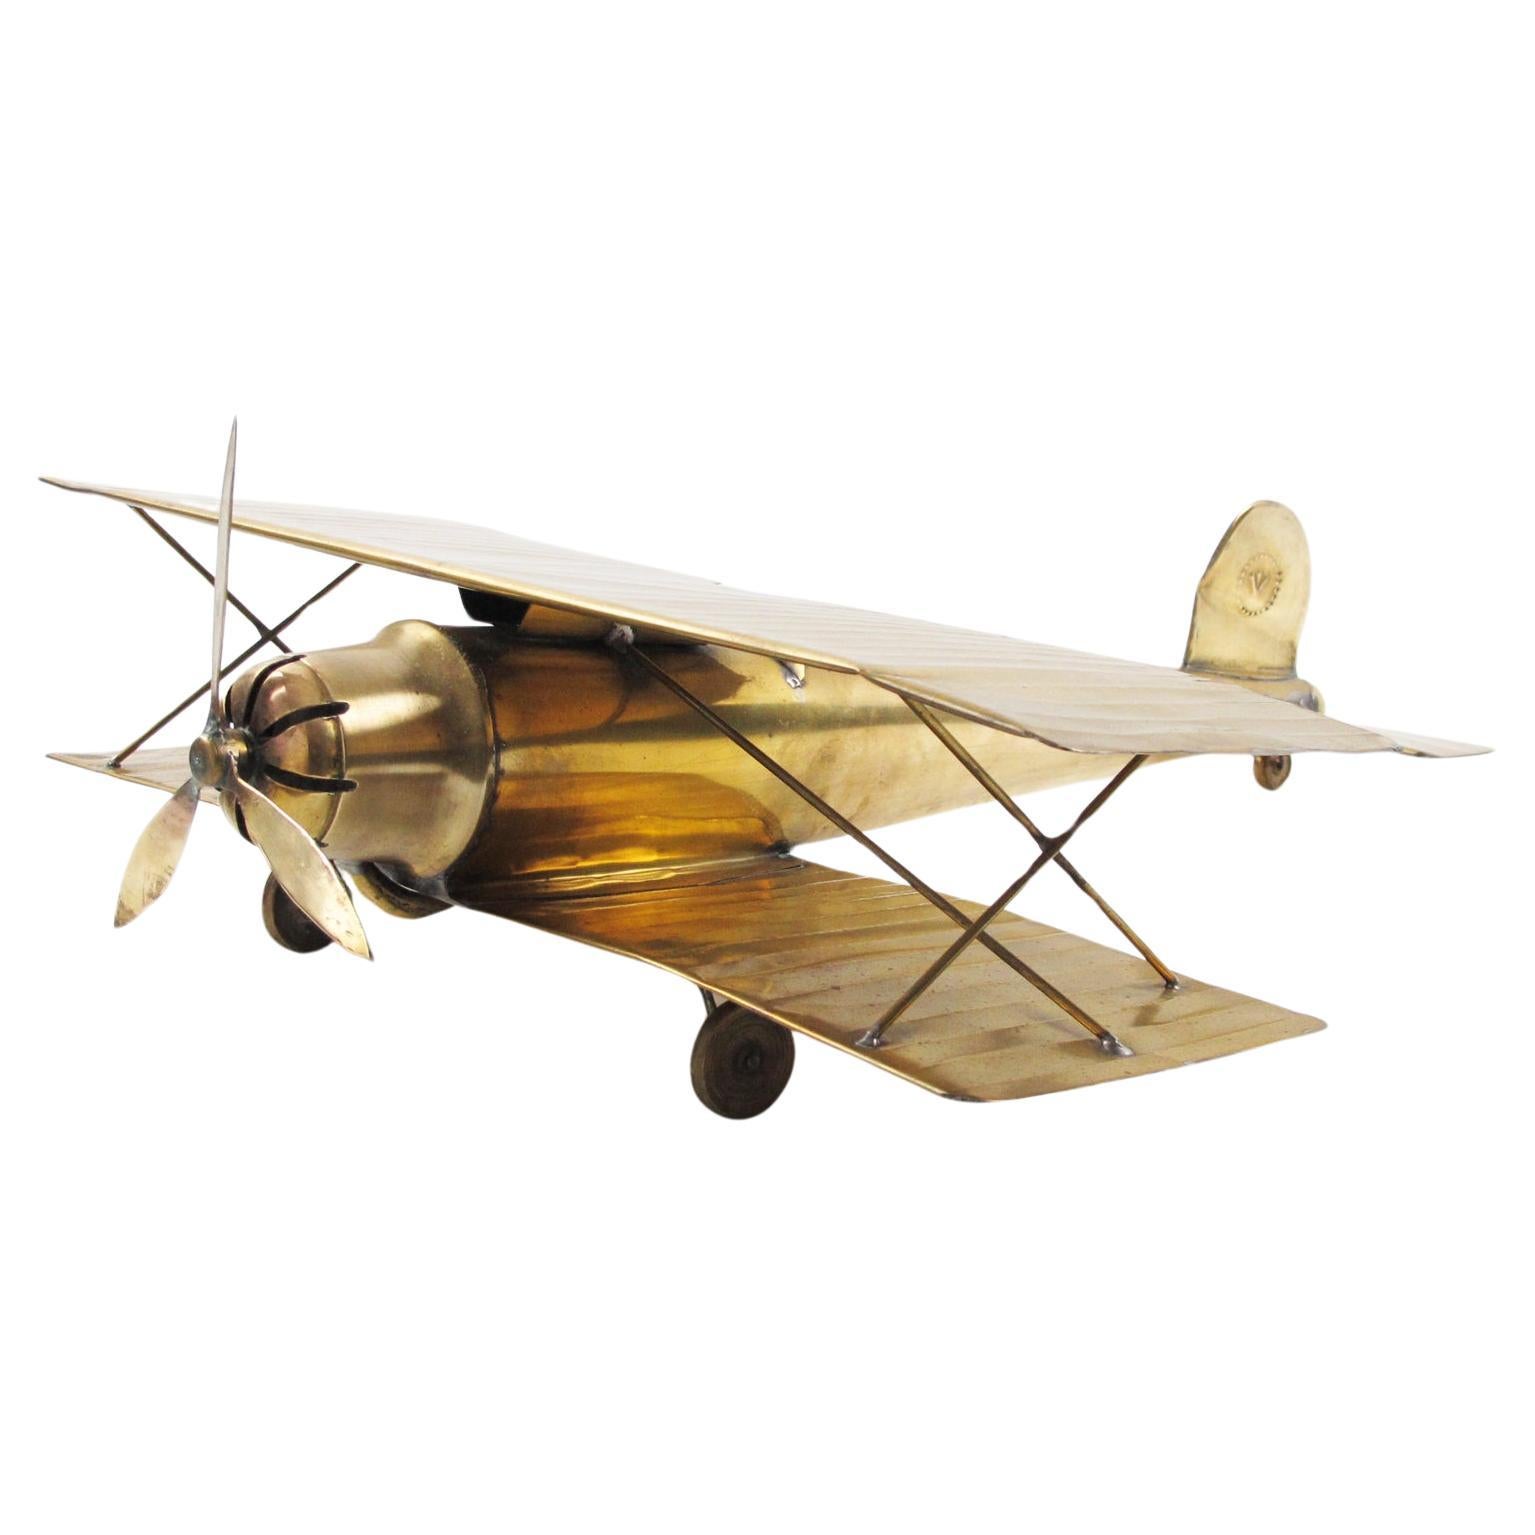 Maquette de biplan en laiton de la Première Guerre mondiale Modèle réduit d'aviation